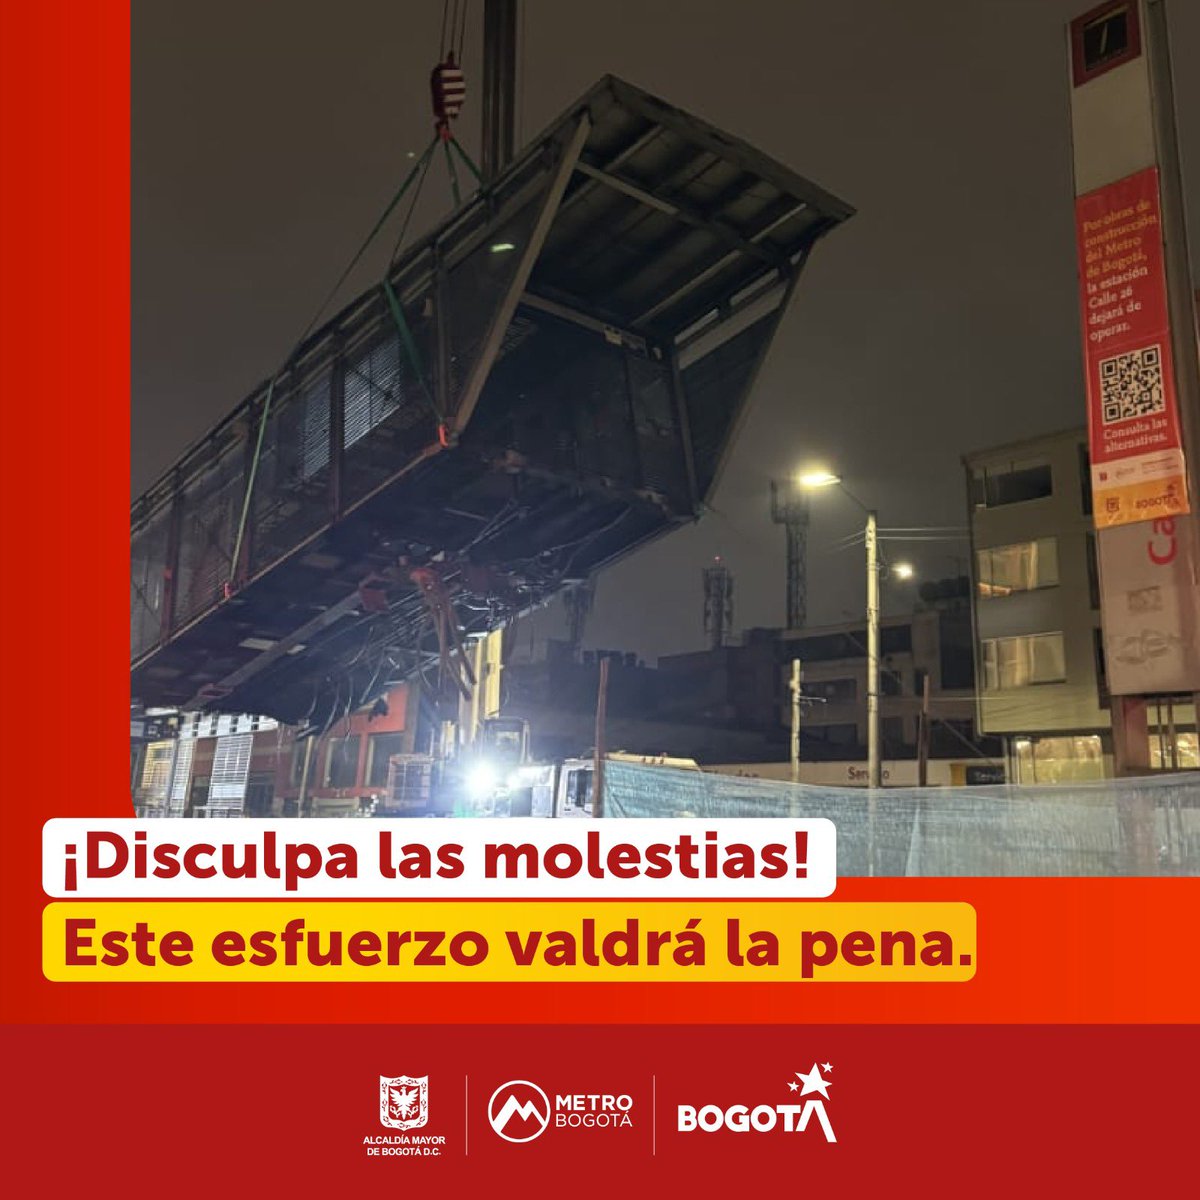 La construcción del viaducto de la Primera Línea de Metro de Bogotá avanza. 🚇 Conoce cómo se está realizando el desmonte de la estación Calle 26 de TransMilenio. ⬇️ bogota.gov.co/mi-ciudad/movi…